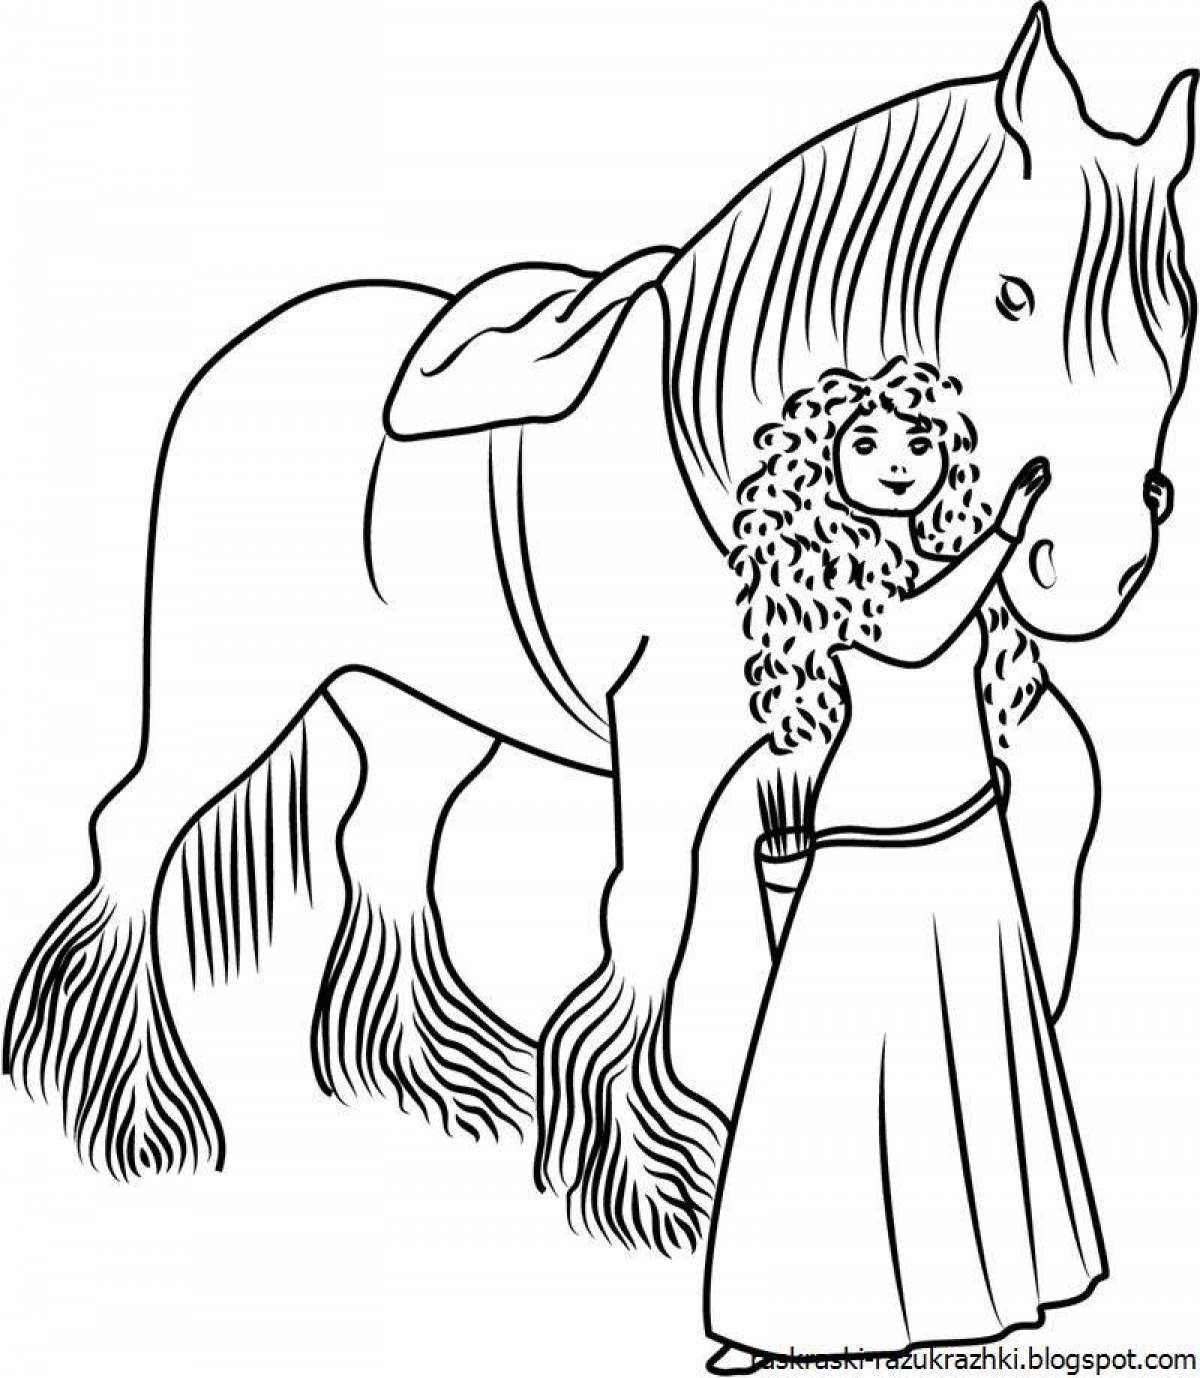 Увлекательная раскраска лошади для девочек